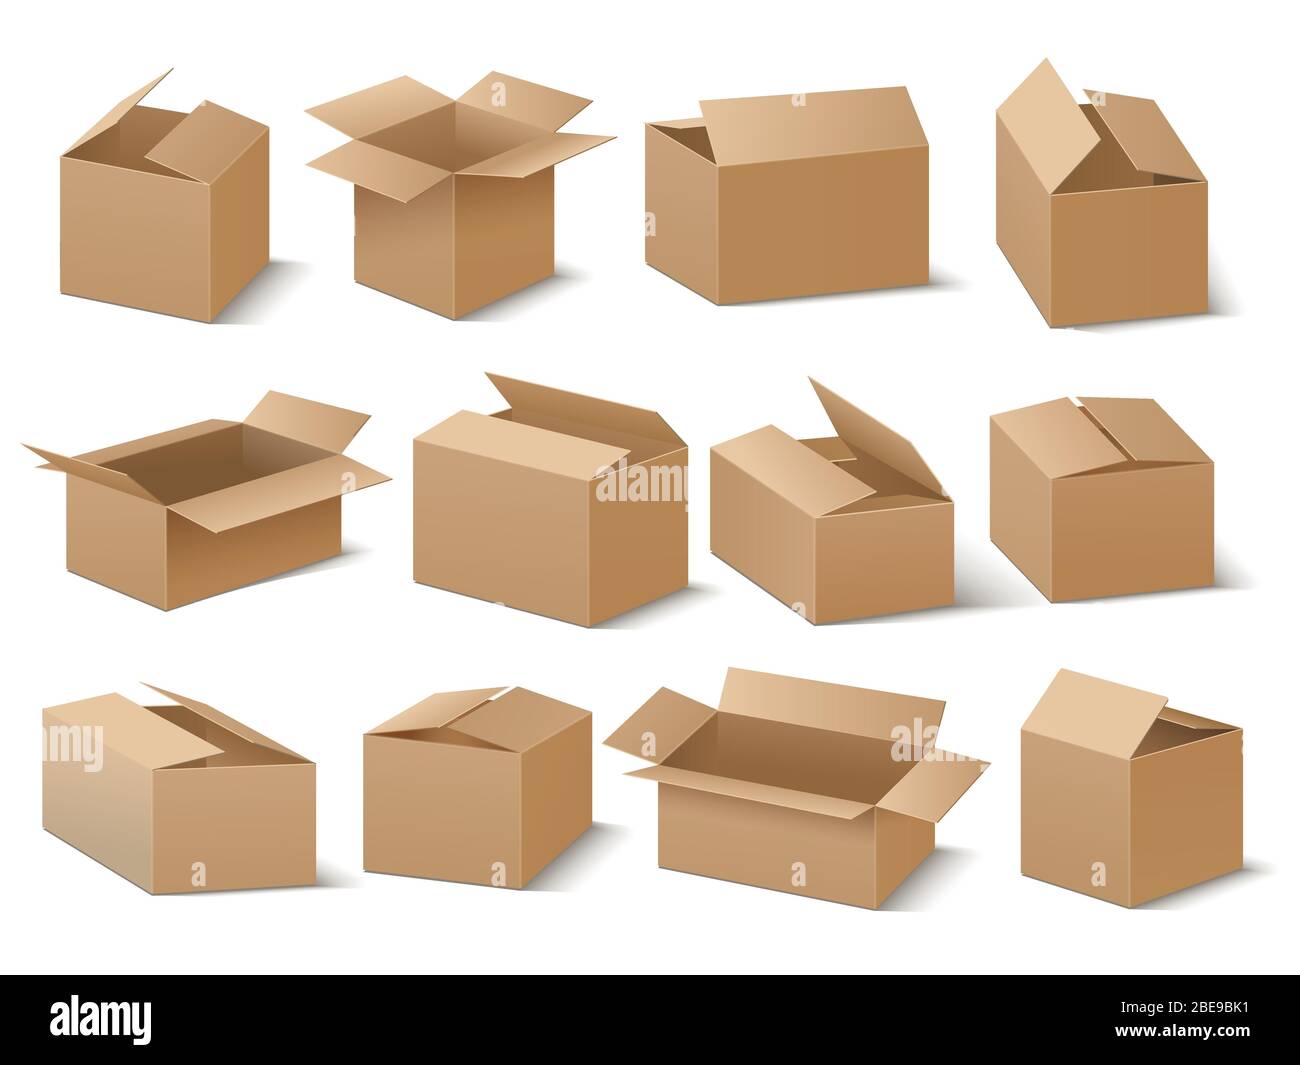 Lieferung und Versand Karton Paket. Braune Kartons Vektor-Set. Karton für Transport und Verpackung Illustration Stock Vektor